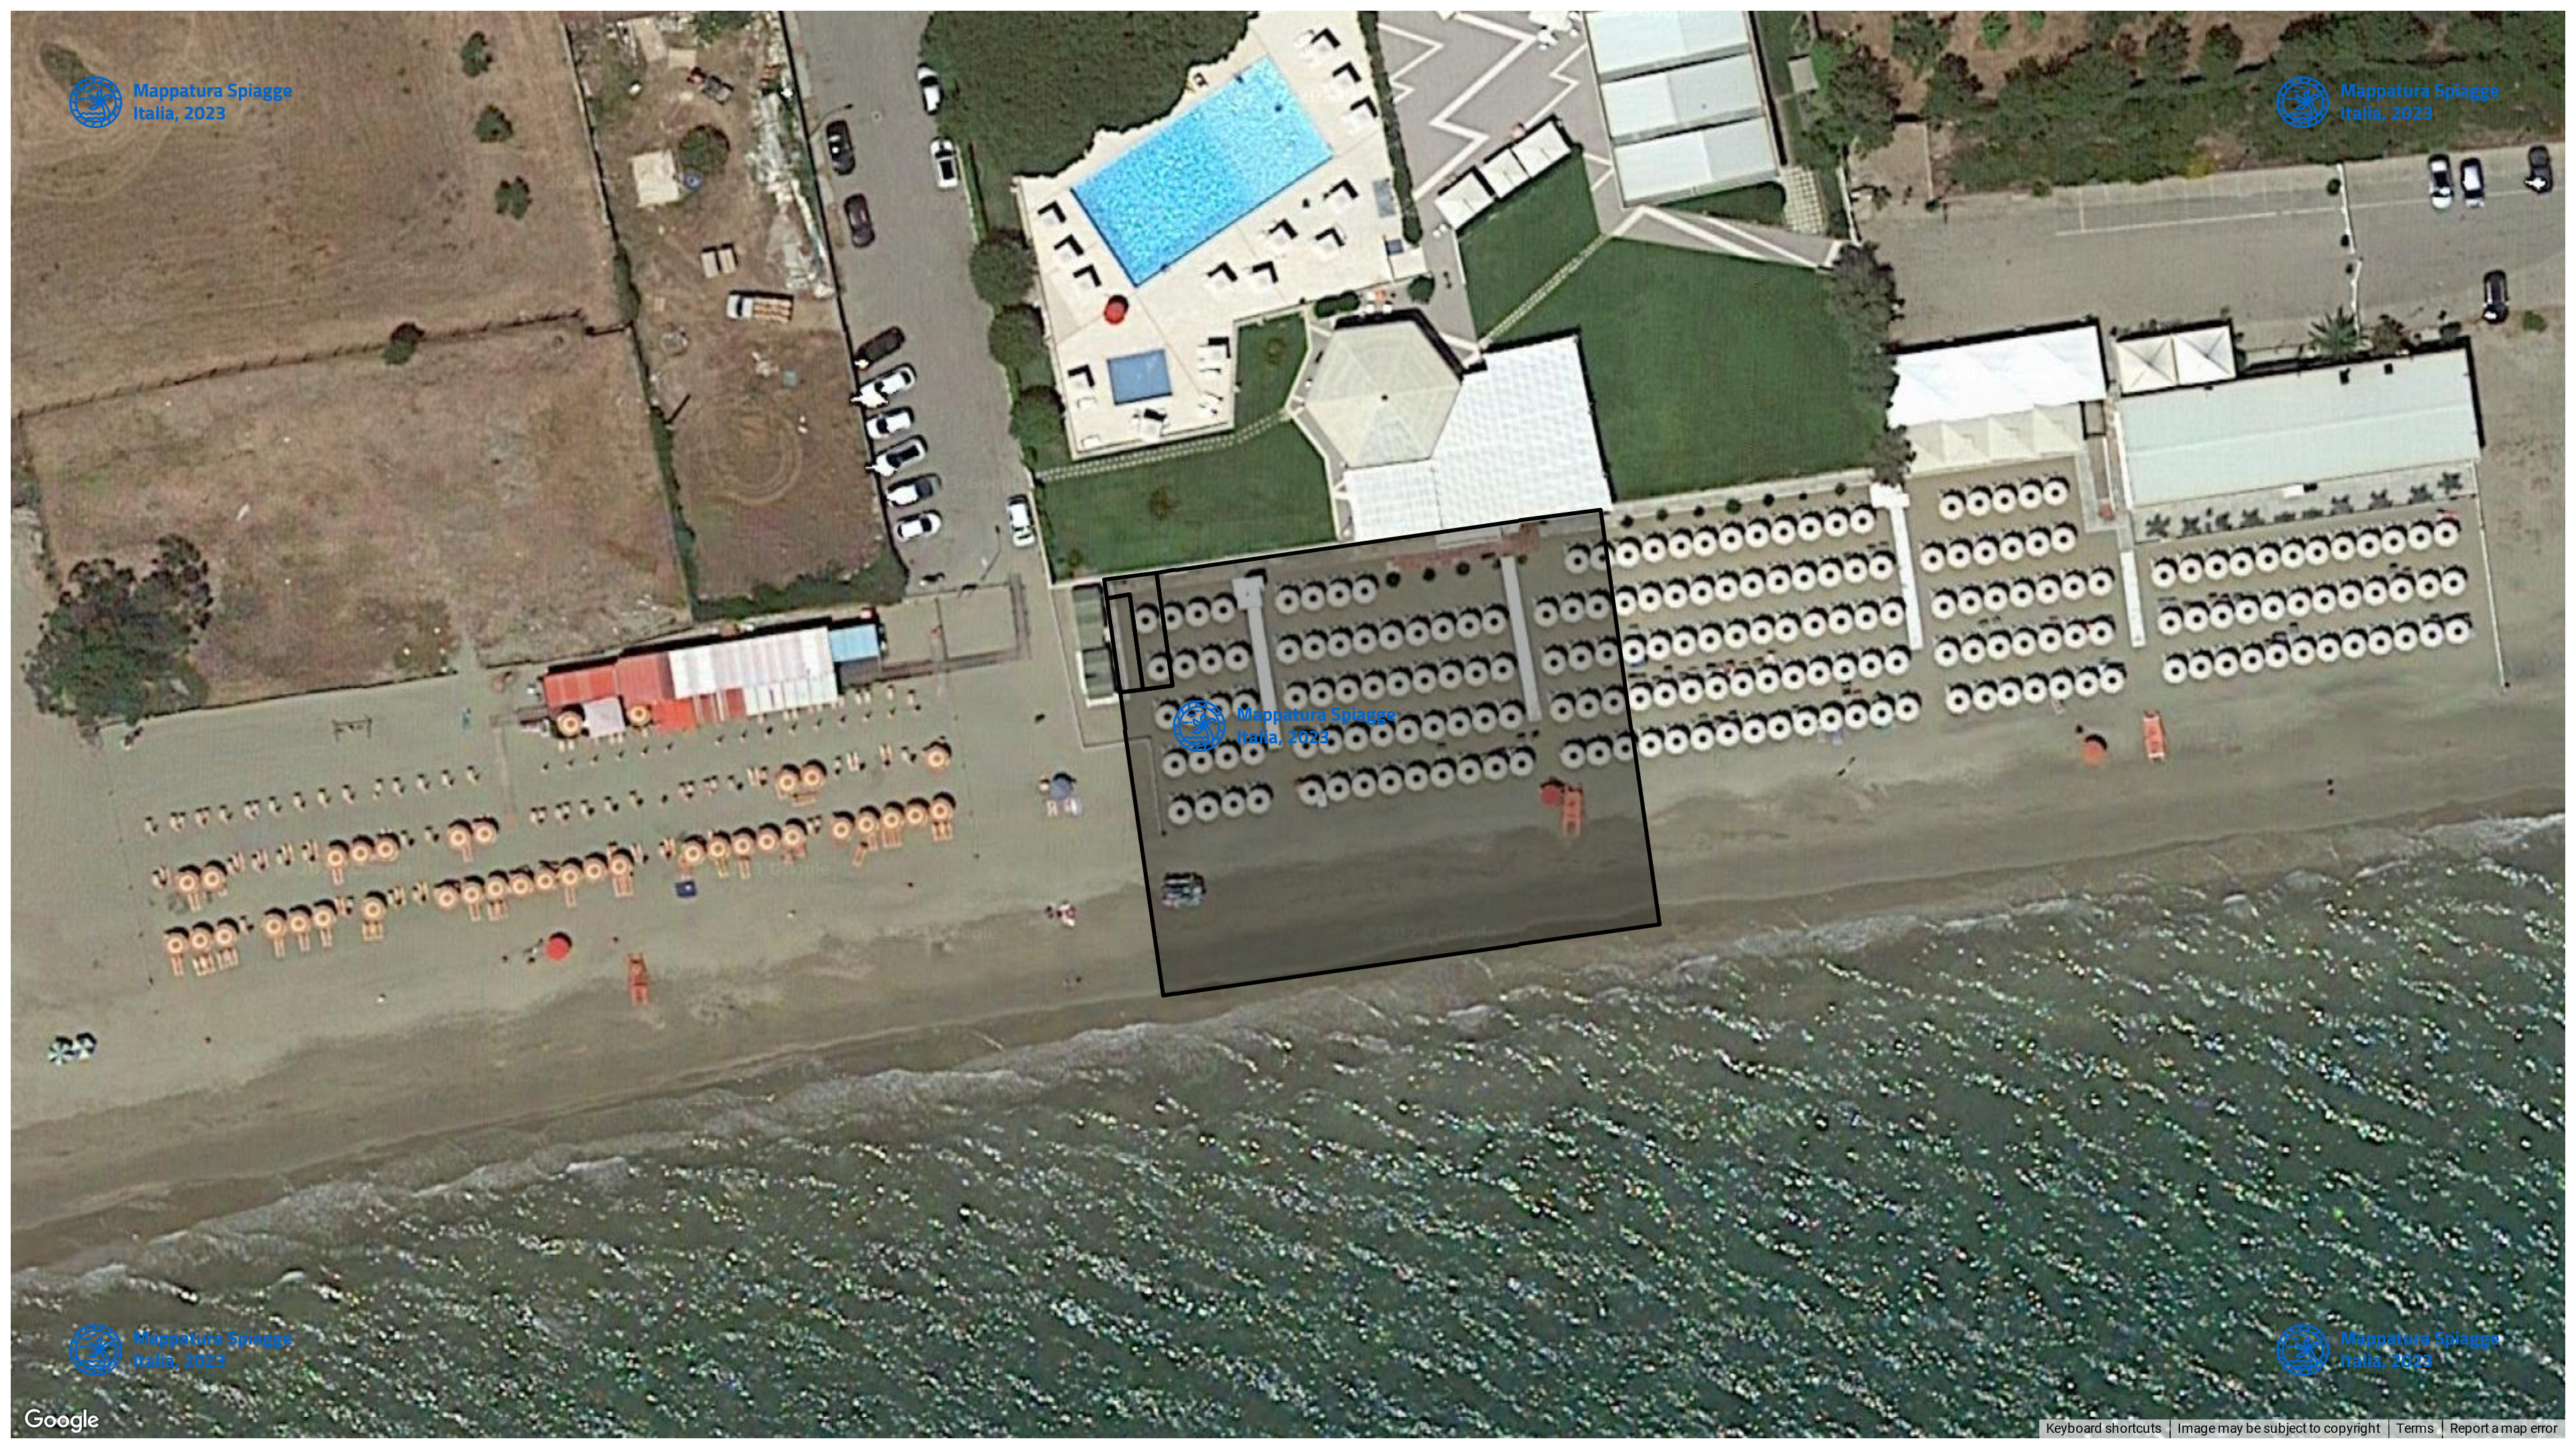 Foto Satellitare - Google Maps - Comune Terracina, Concessione: N. 0 / 2014 del 19-09-2023